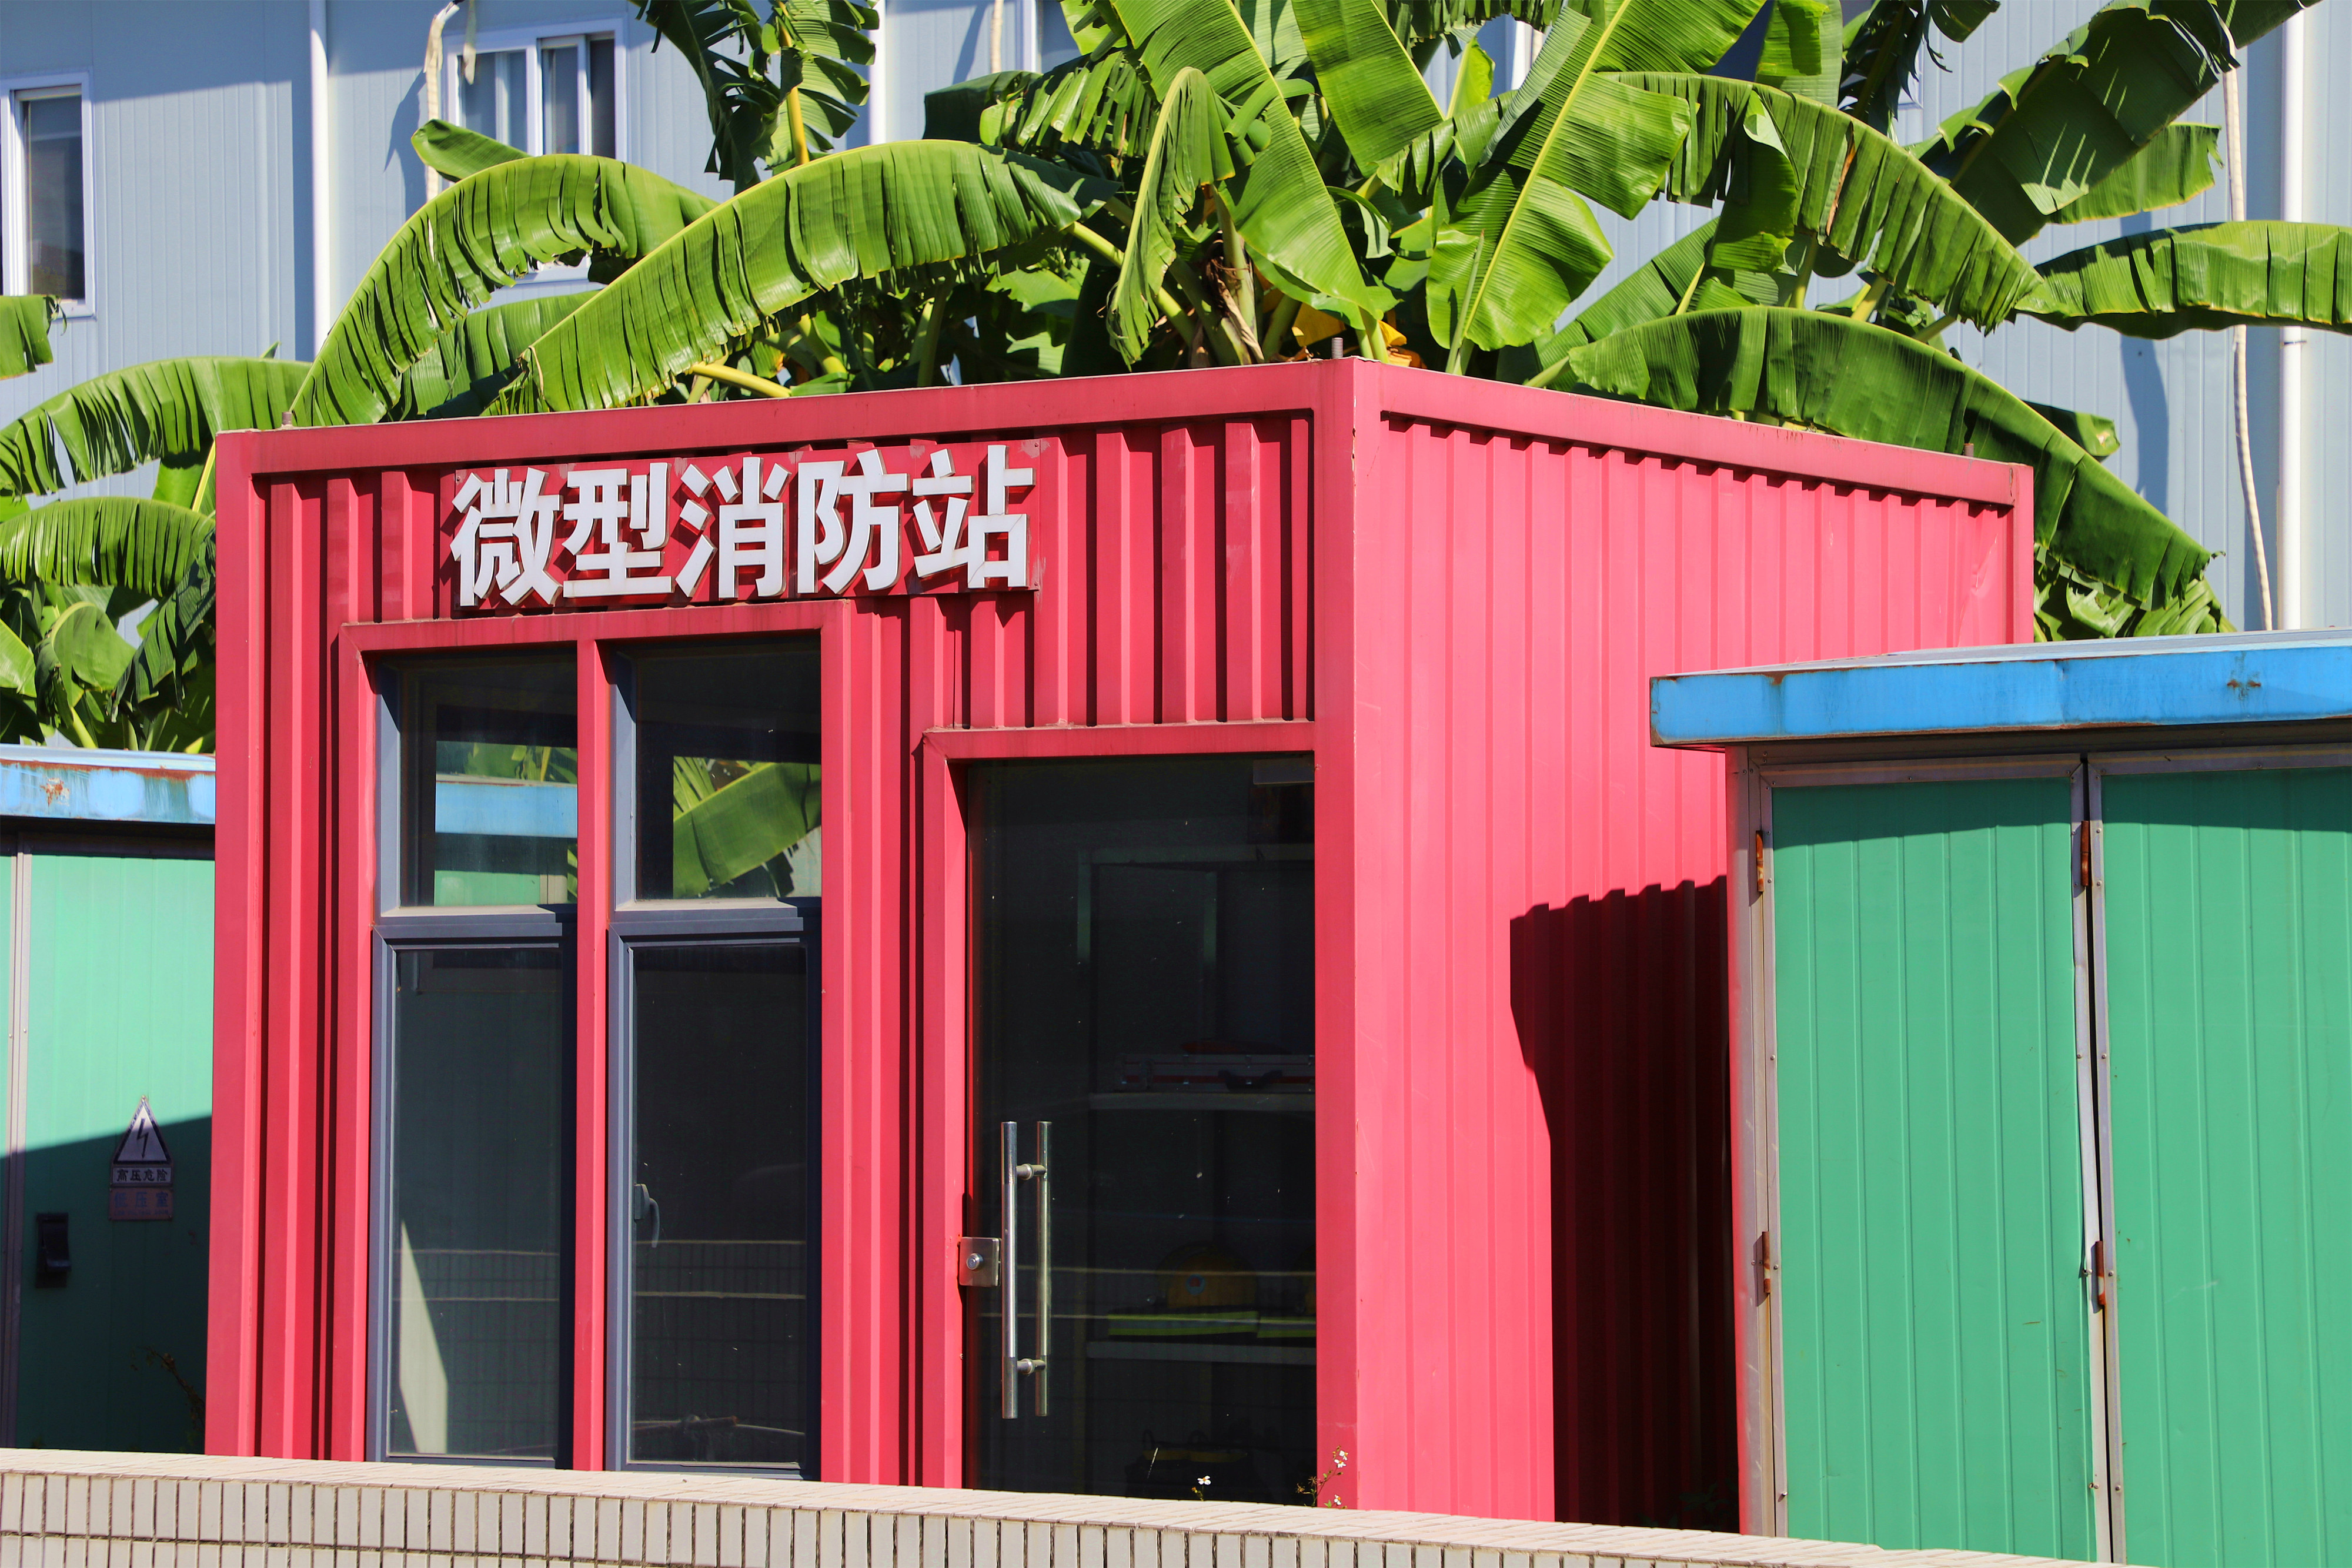 深圳龙岗区的微型消防站。